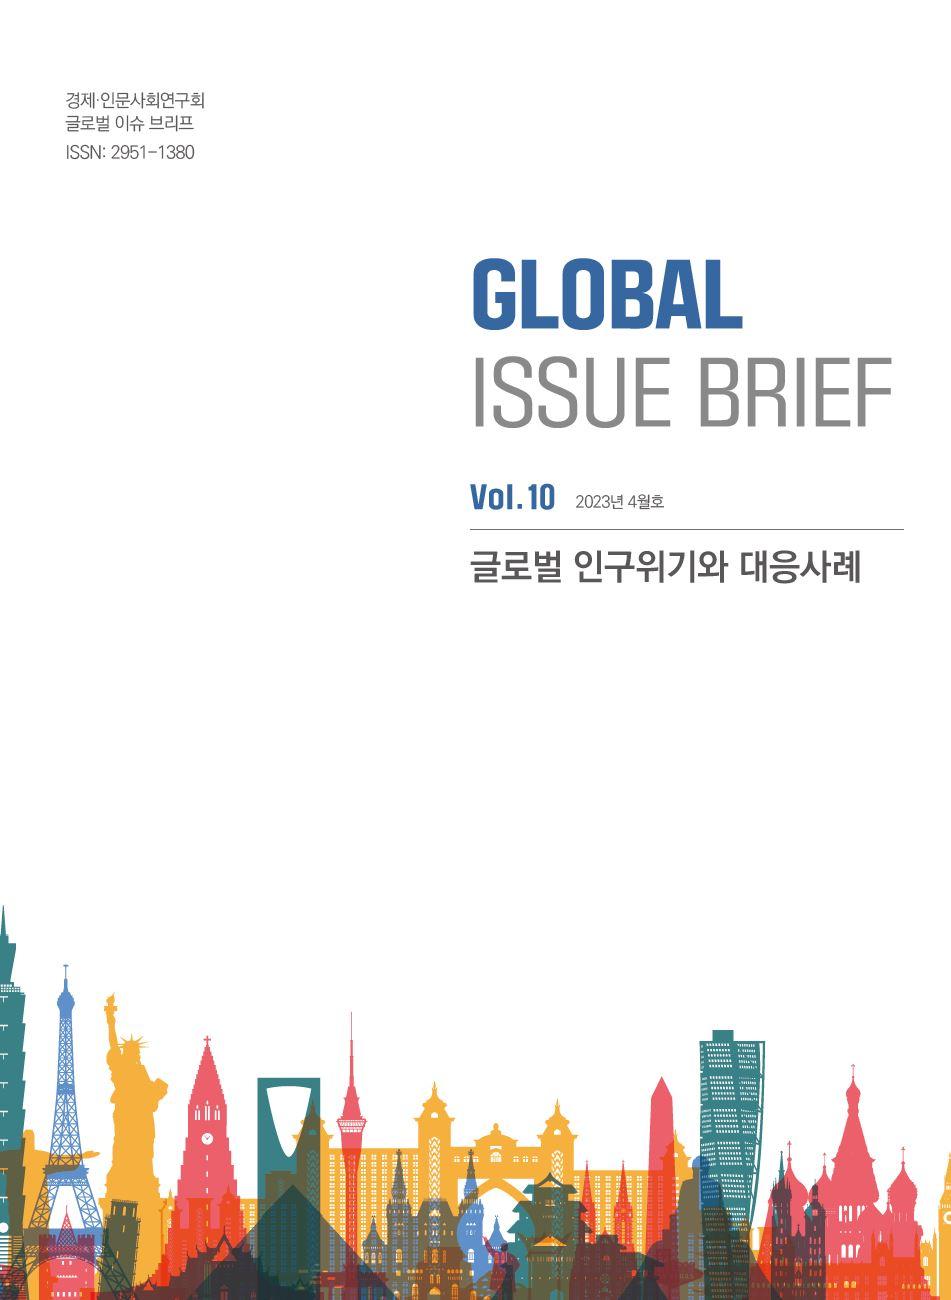 경제인문사회연구회 글로벌 이슈 브리프 ISSN:2951-1380 | GLOBAL ISSUE BRIEF Vol.10 2023년 4월호 | 글로벌 인구위기와 대응사례